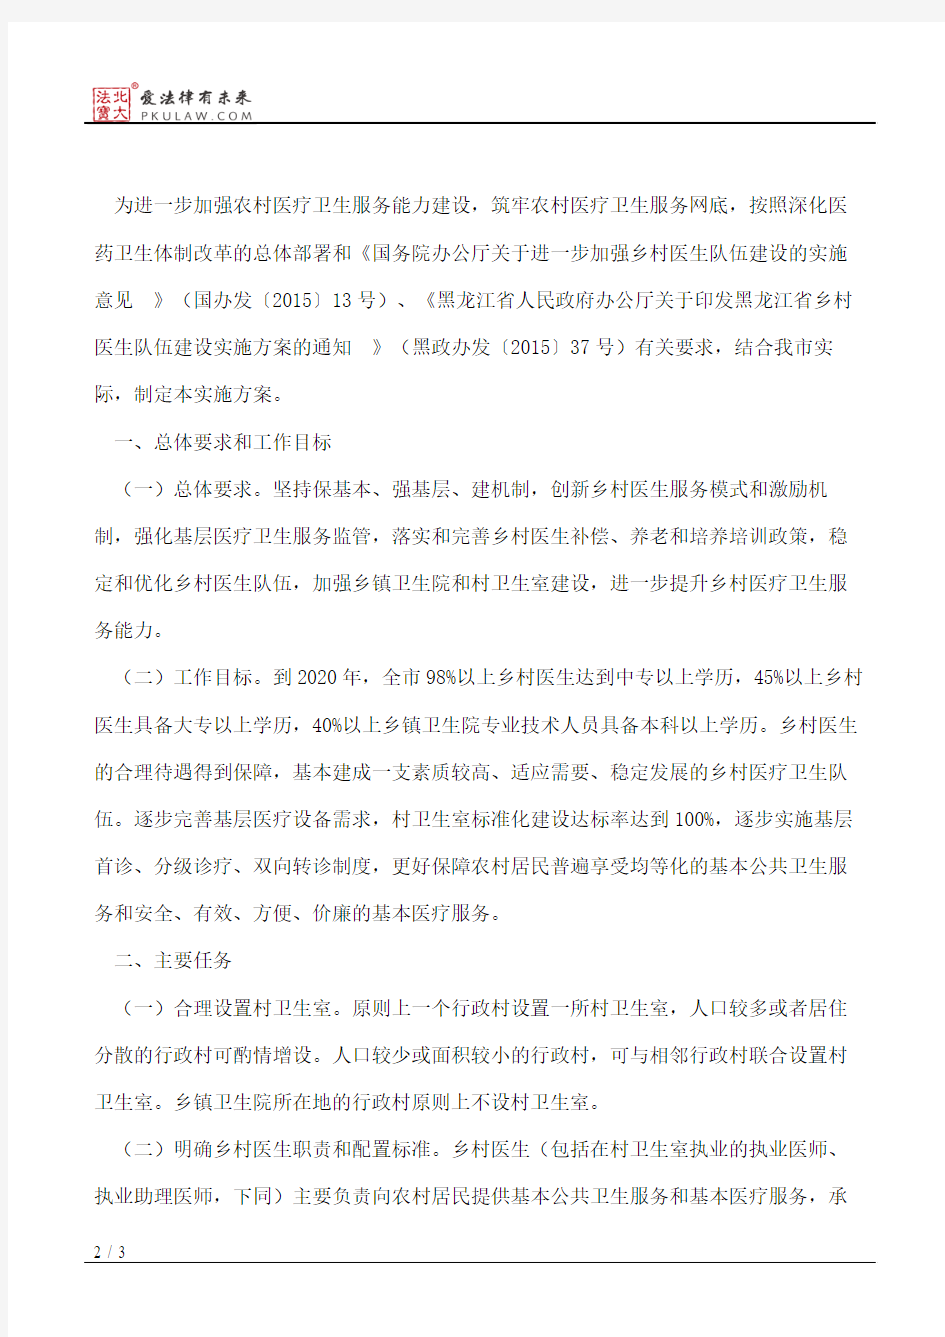 大庆市人民政府办公室关于印发大庆市农村医疗卫生服务能力建设实